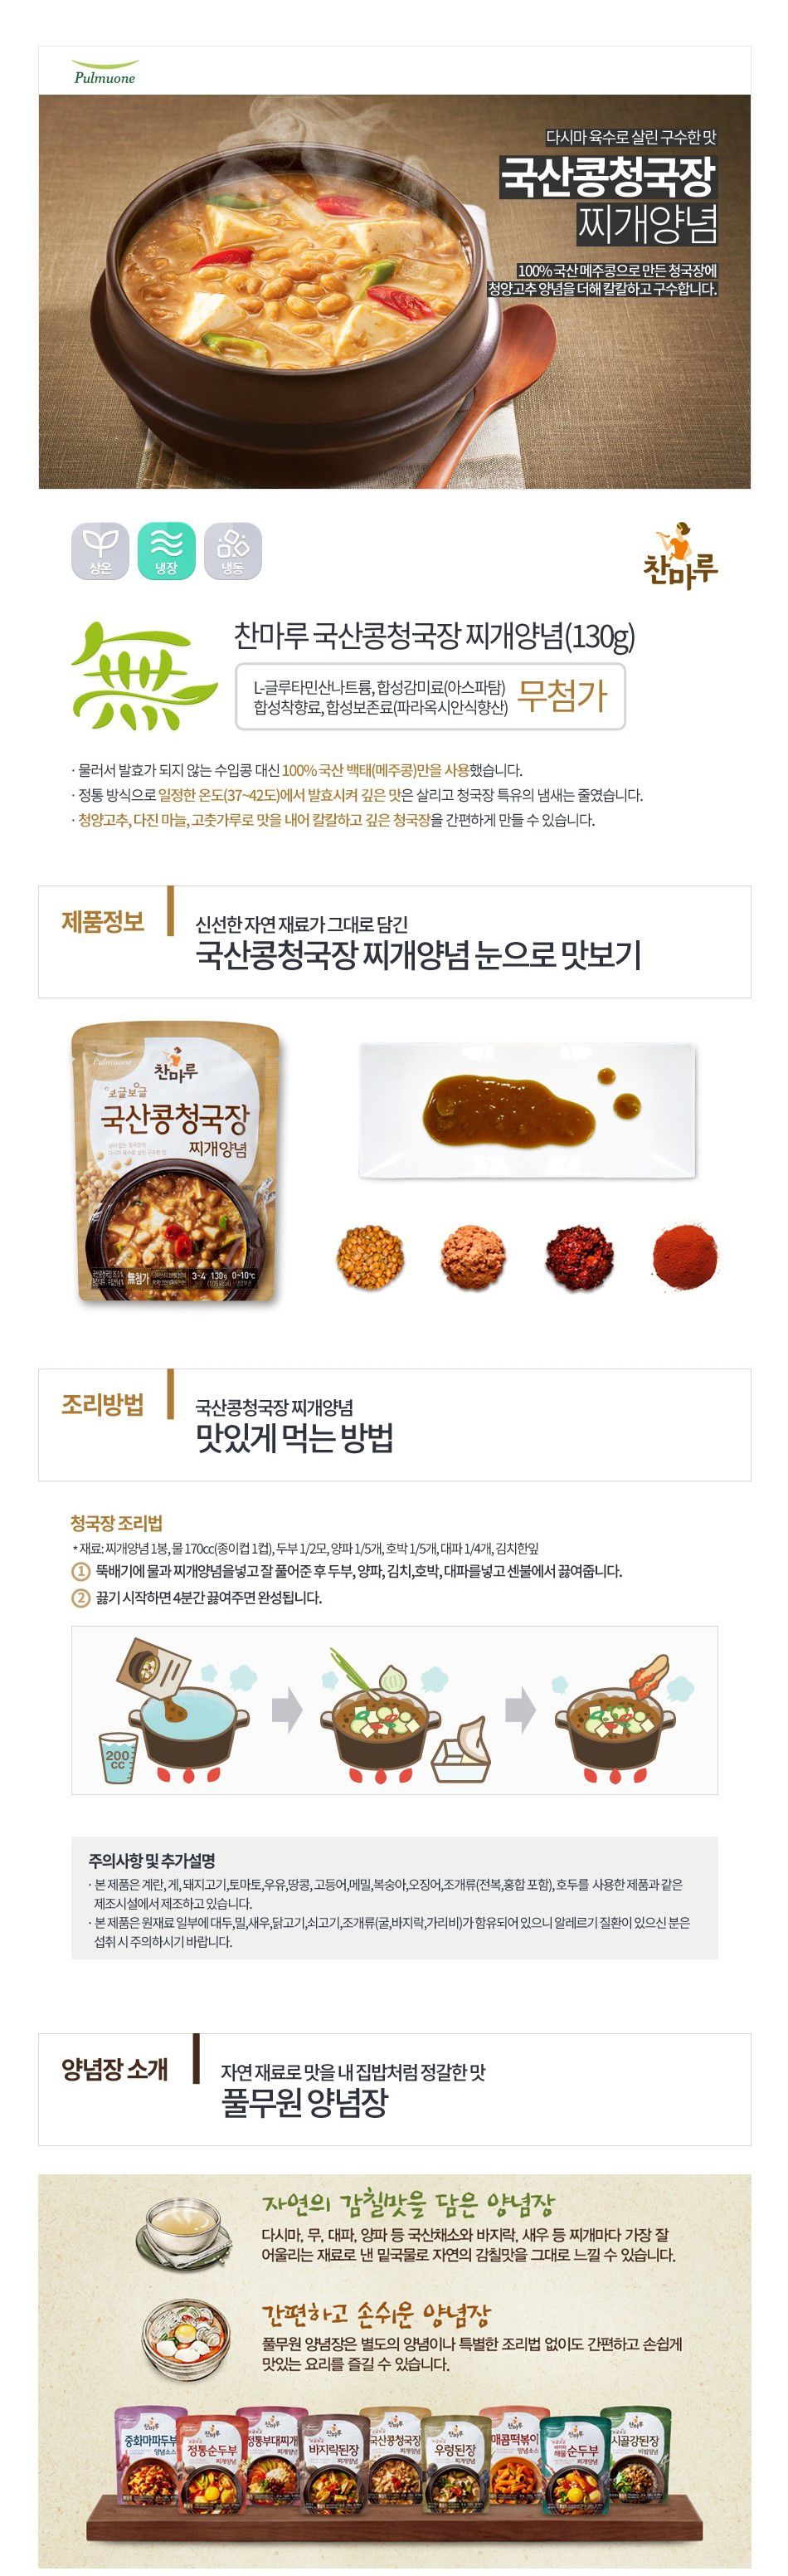 韓國食品-[풀무원] 국산콩청국장찌개양념 130g